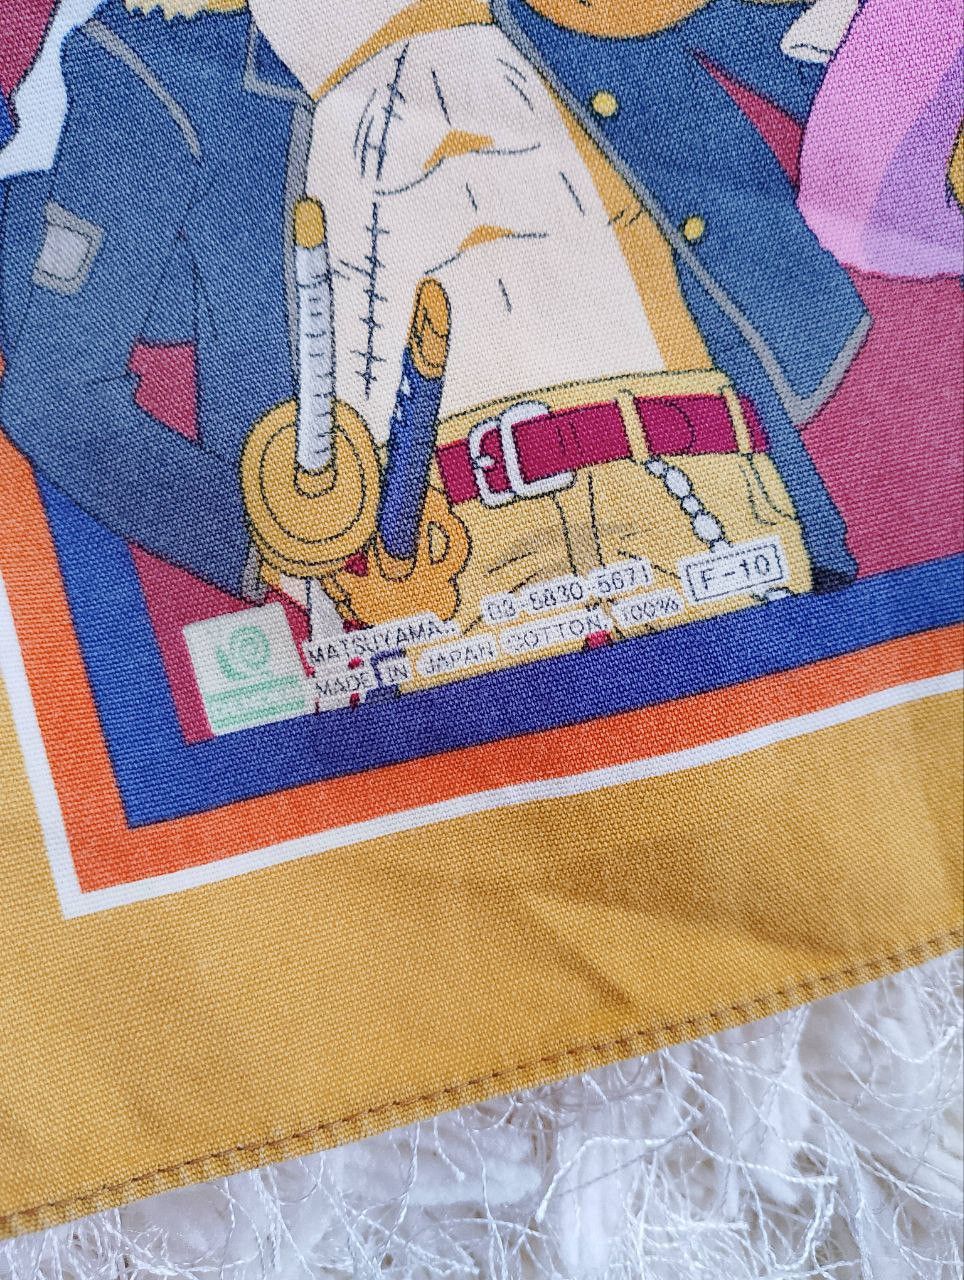 One Piece by Matsuyama Made in Japan Handkerchief Bandana - 7